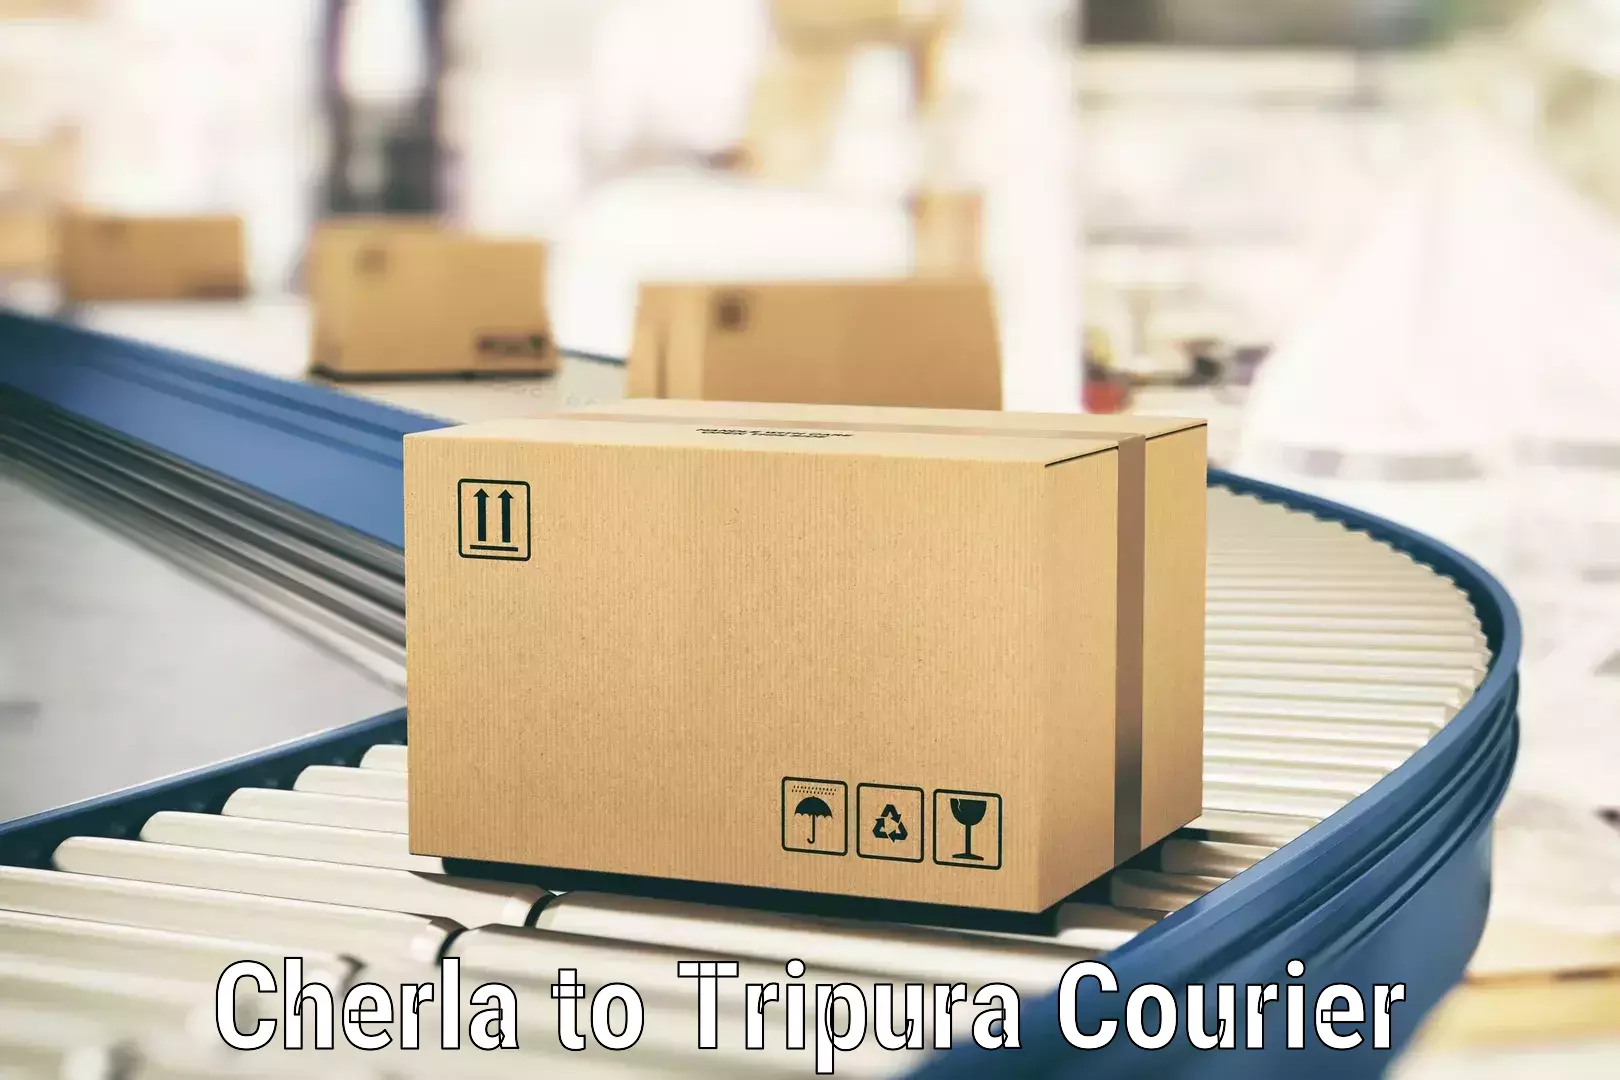 Customer-focused courier Cherla to Tripura